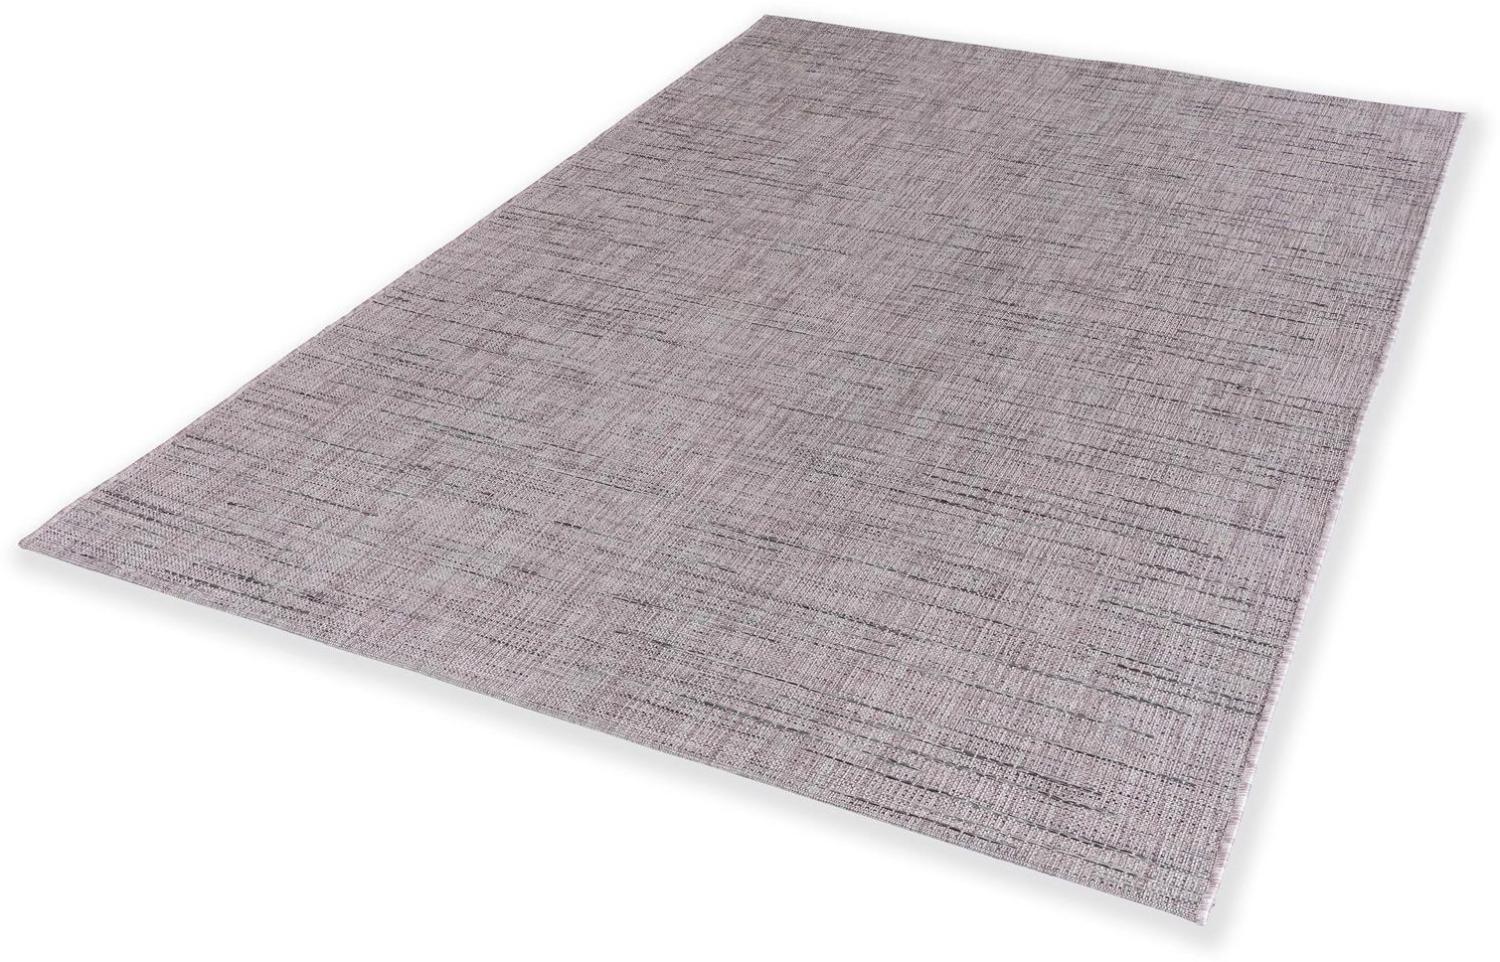 Teppich in rosa aus 100% Polypropylen - 230x160x0,5cm (LxBxH) Bild 1